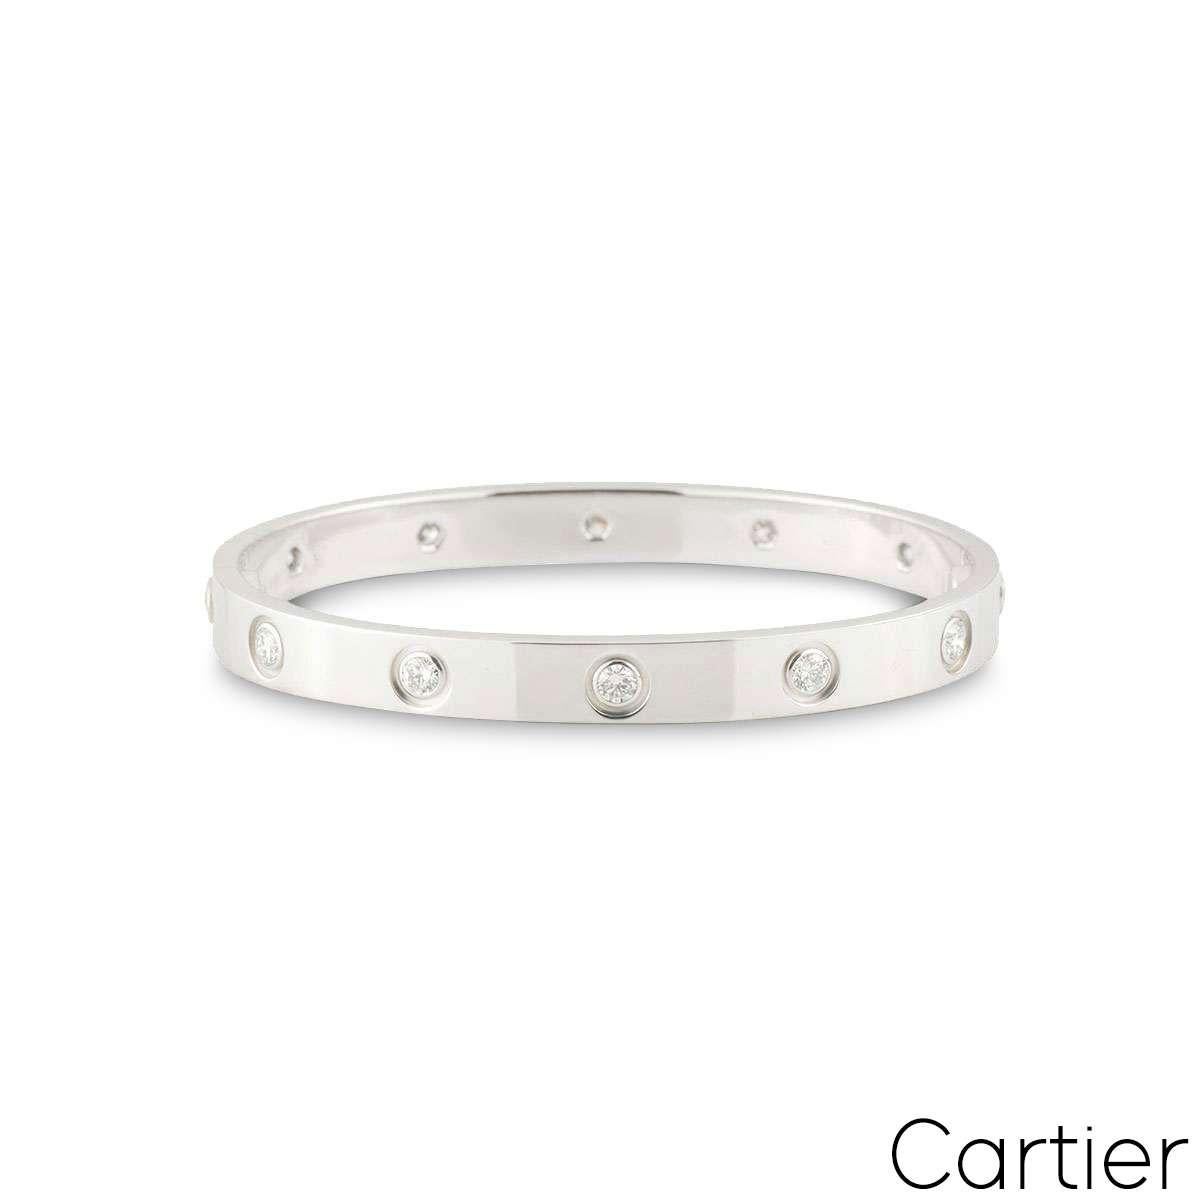 Un bracelet Cartier en or blanc 18 carats et plein de diamants, de la collection Love. Le bracelet est serti de 10 diamants ronds de taille brillant circulant sur le bord extérieur dans une monture en rubis. Ce bracelet est de taille 17, présente le